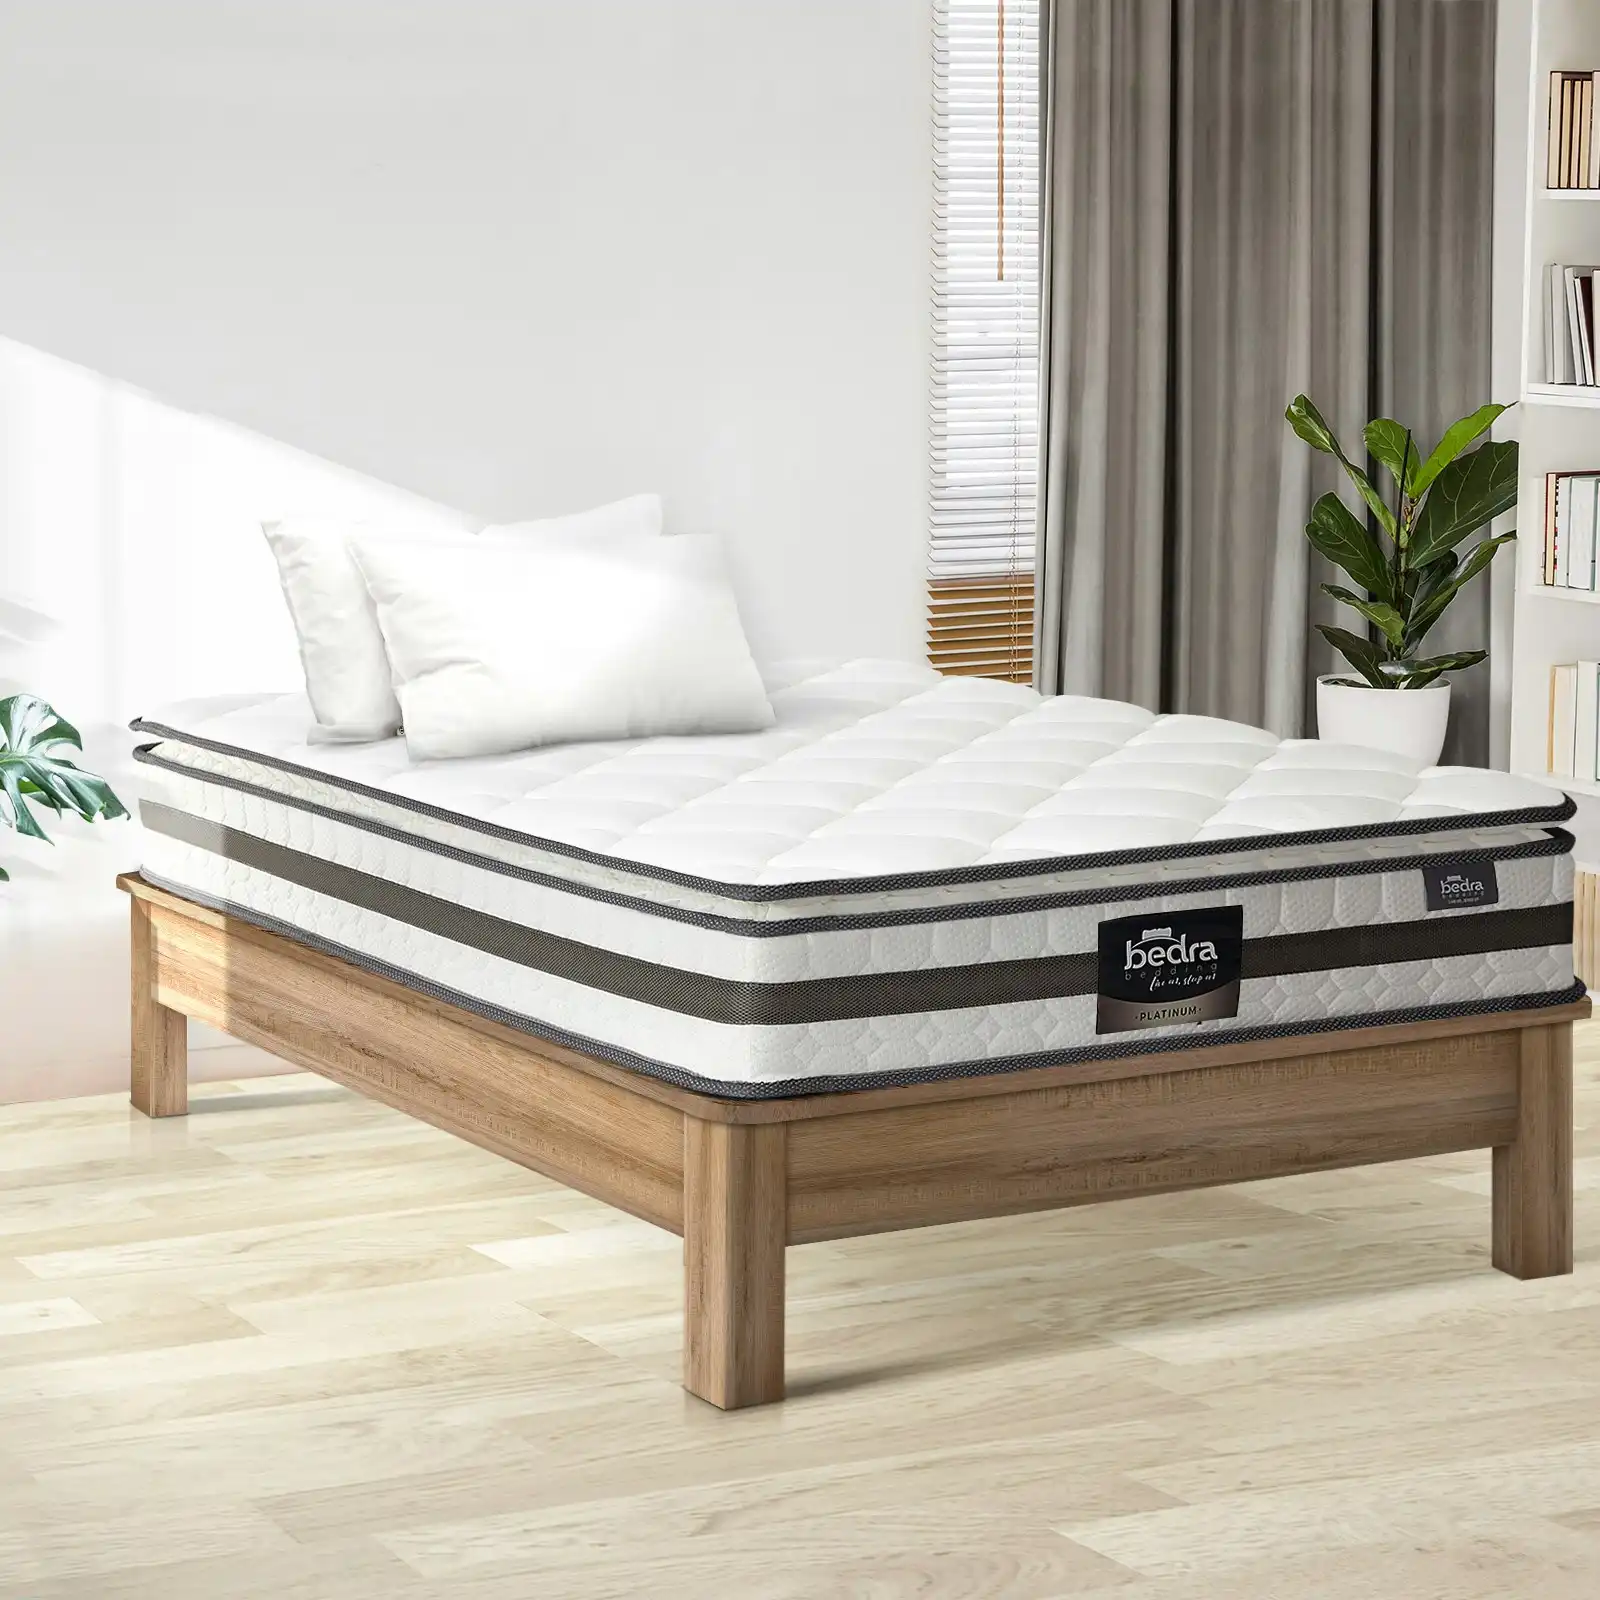 Bedra King Single Mattress Pillow Top Bed Bonnell Spring Foam 21cm